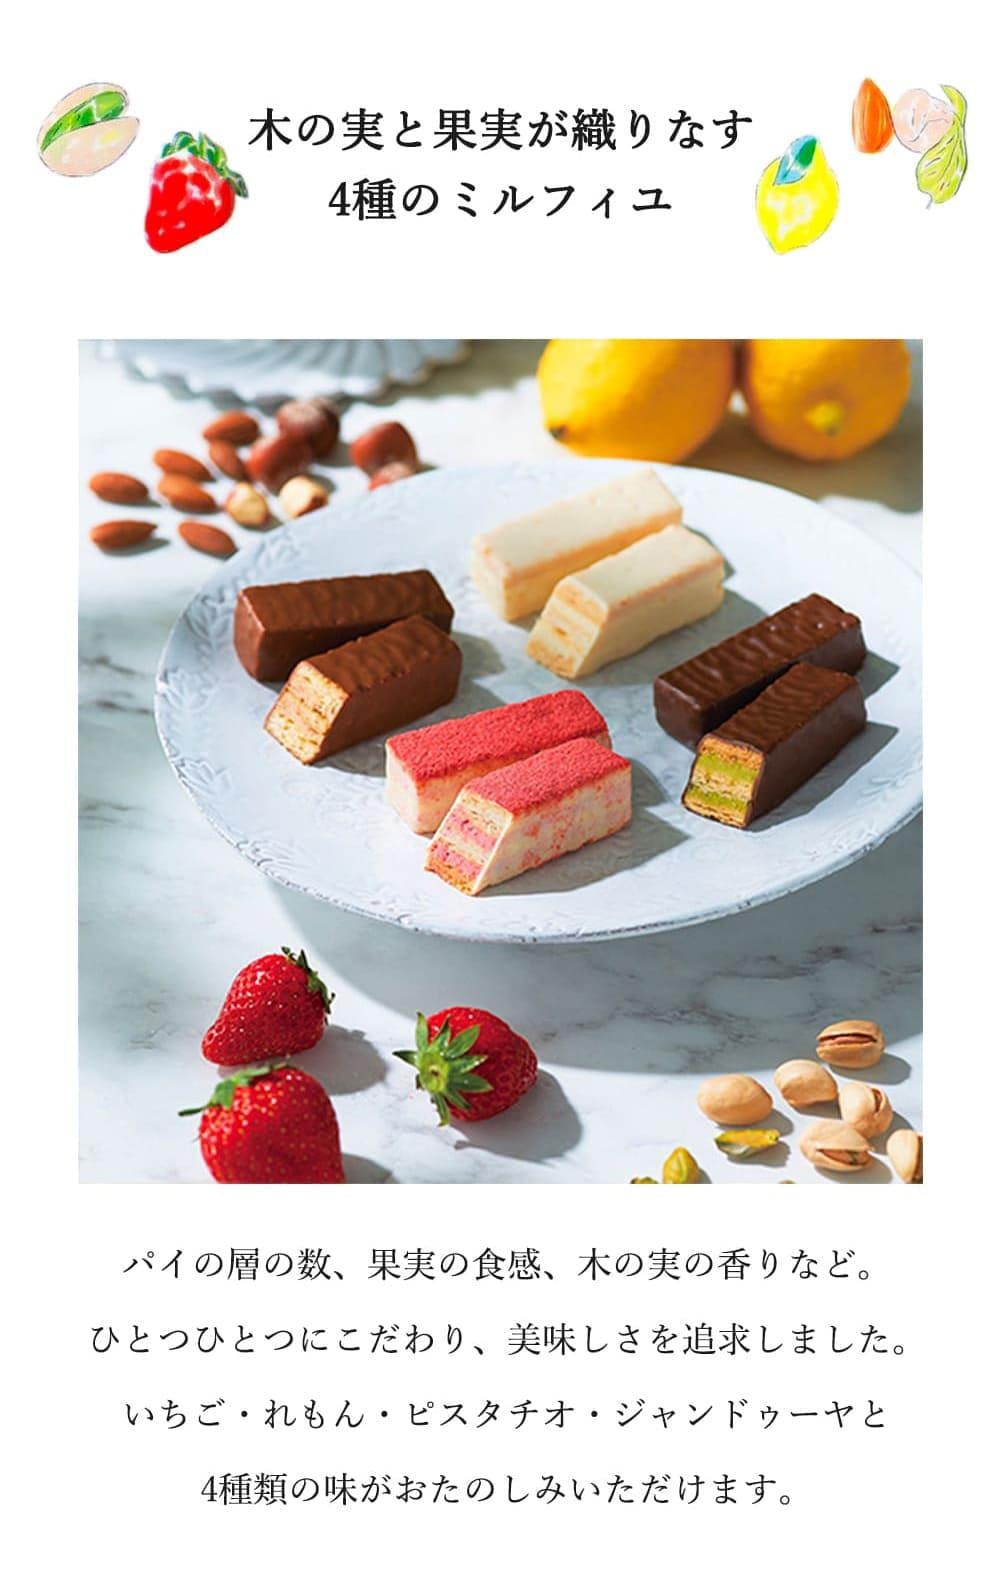 【日本北海道直邮】日本FRANCAIS 什锦奶油夹心巧克力拿破仑组合4种口味12枚